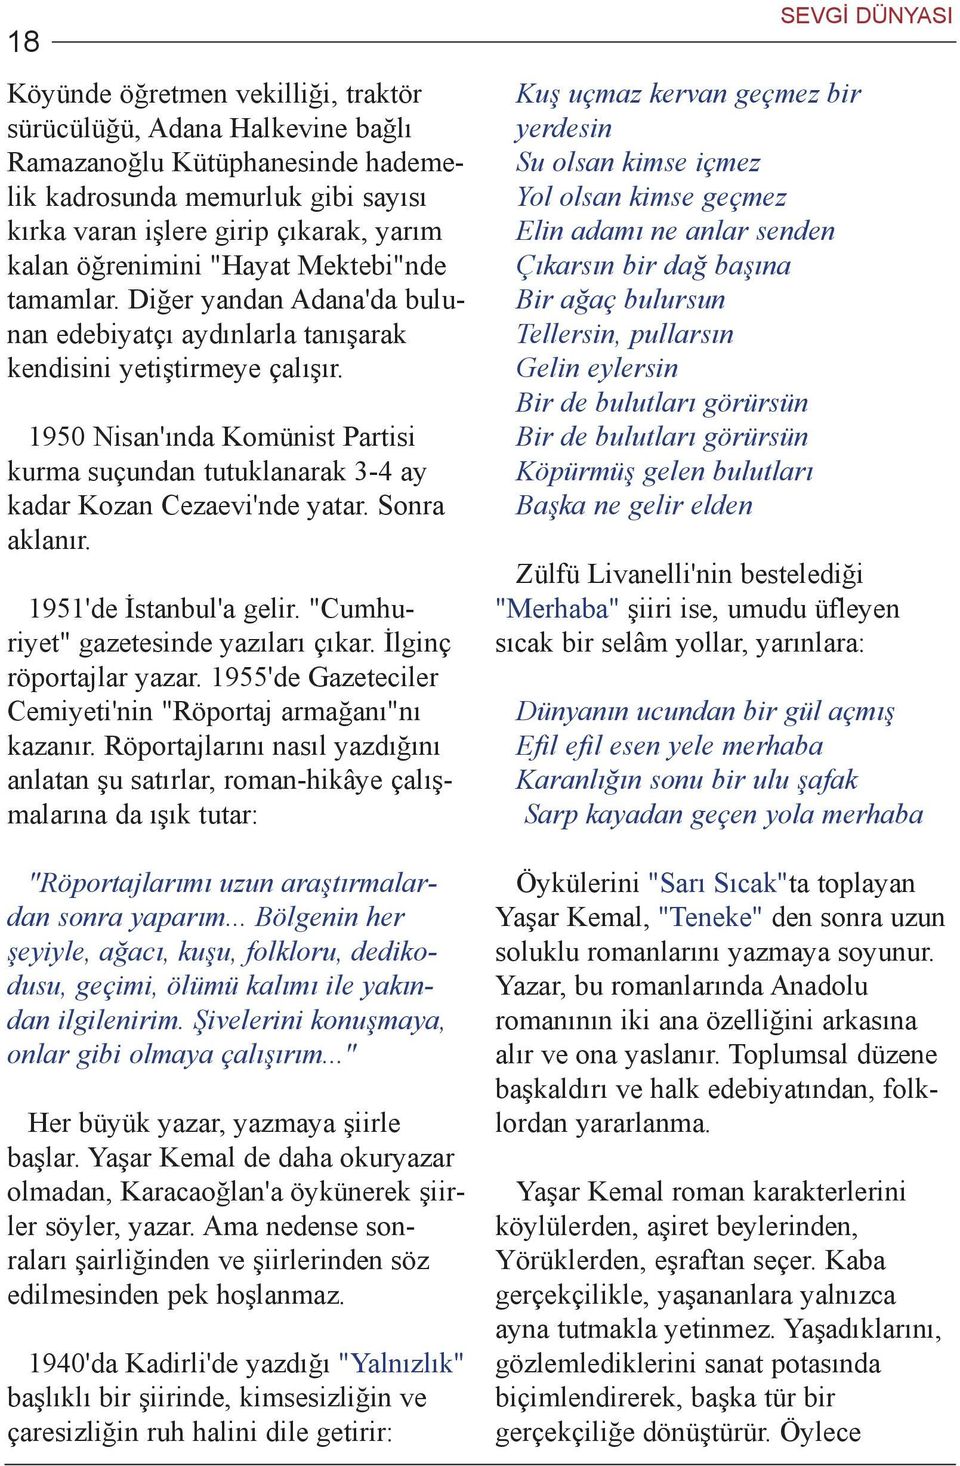 1950 Nisan'ýnda Komünist Partisi kurma suçundan tutuklanarak 3-4 ay kadar Kozan Cezaevi'nde yatar. Sonra aklanýr. 1951'de Ýstanbul'a gelir. "Cumhuriyet" gazetesinde yazýlarý çýkar.